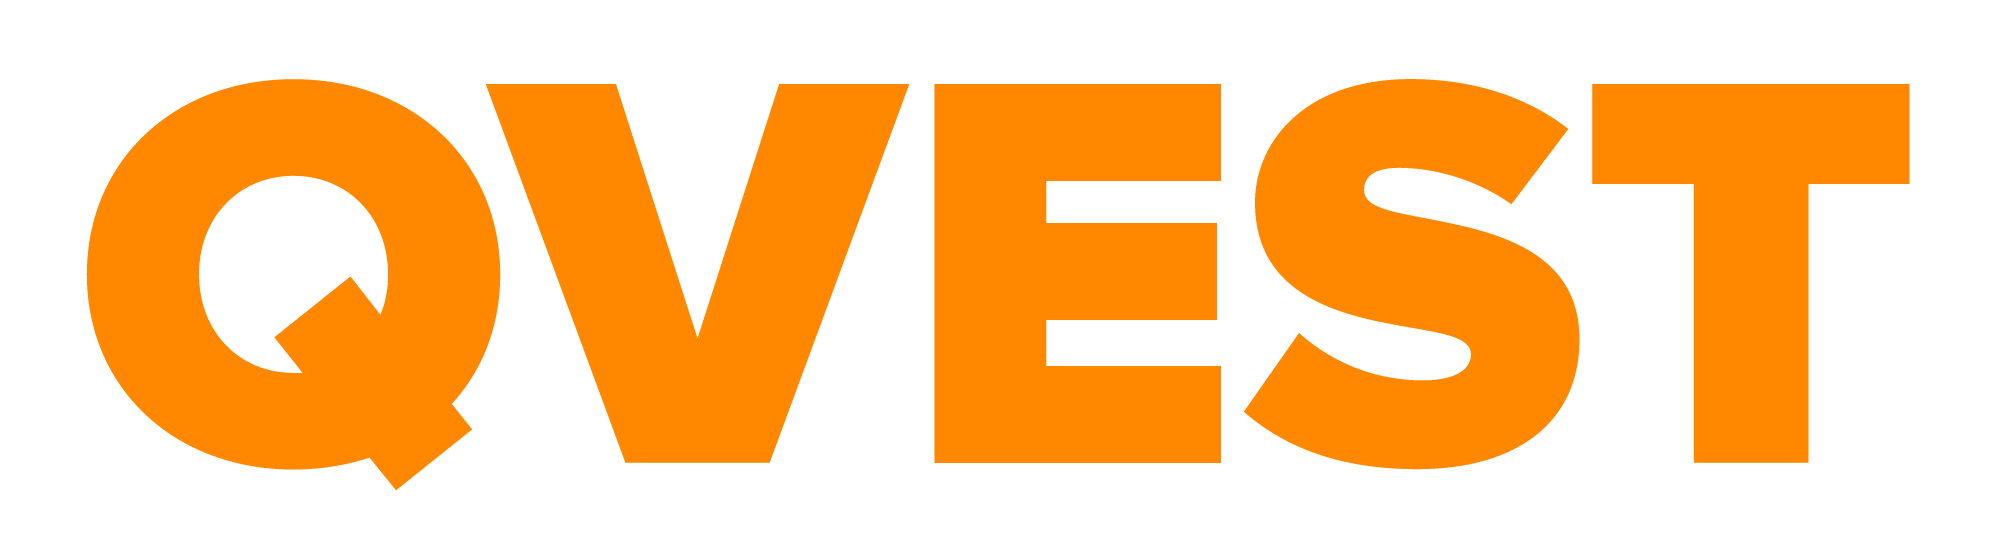 QVEST-Logo-RGB-2021-ORANGE-1.png